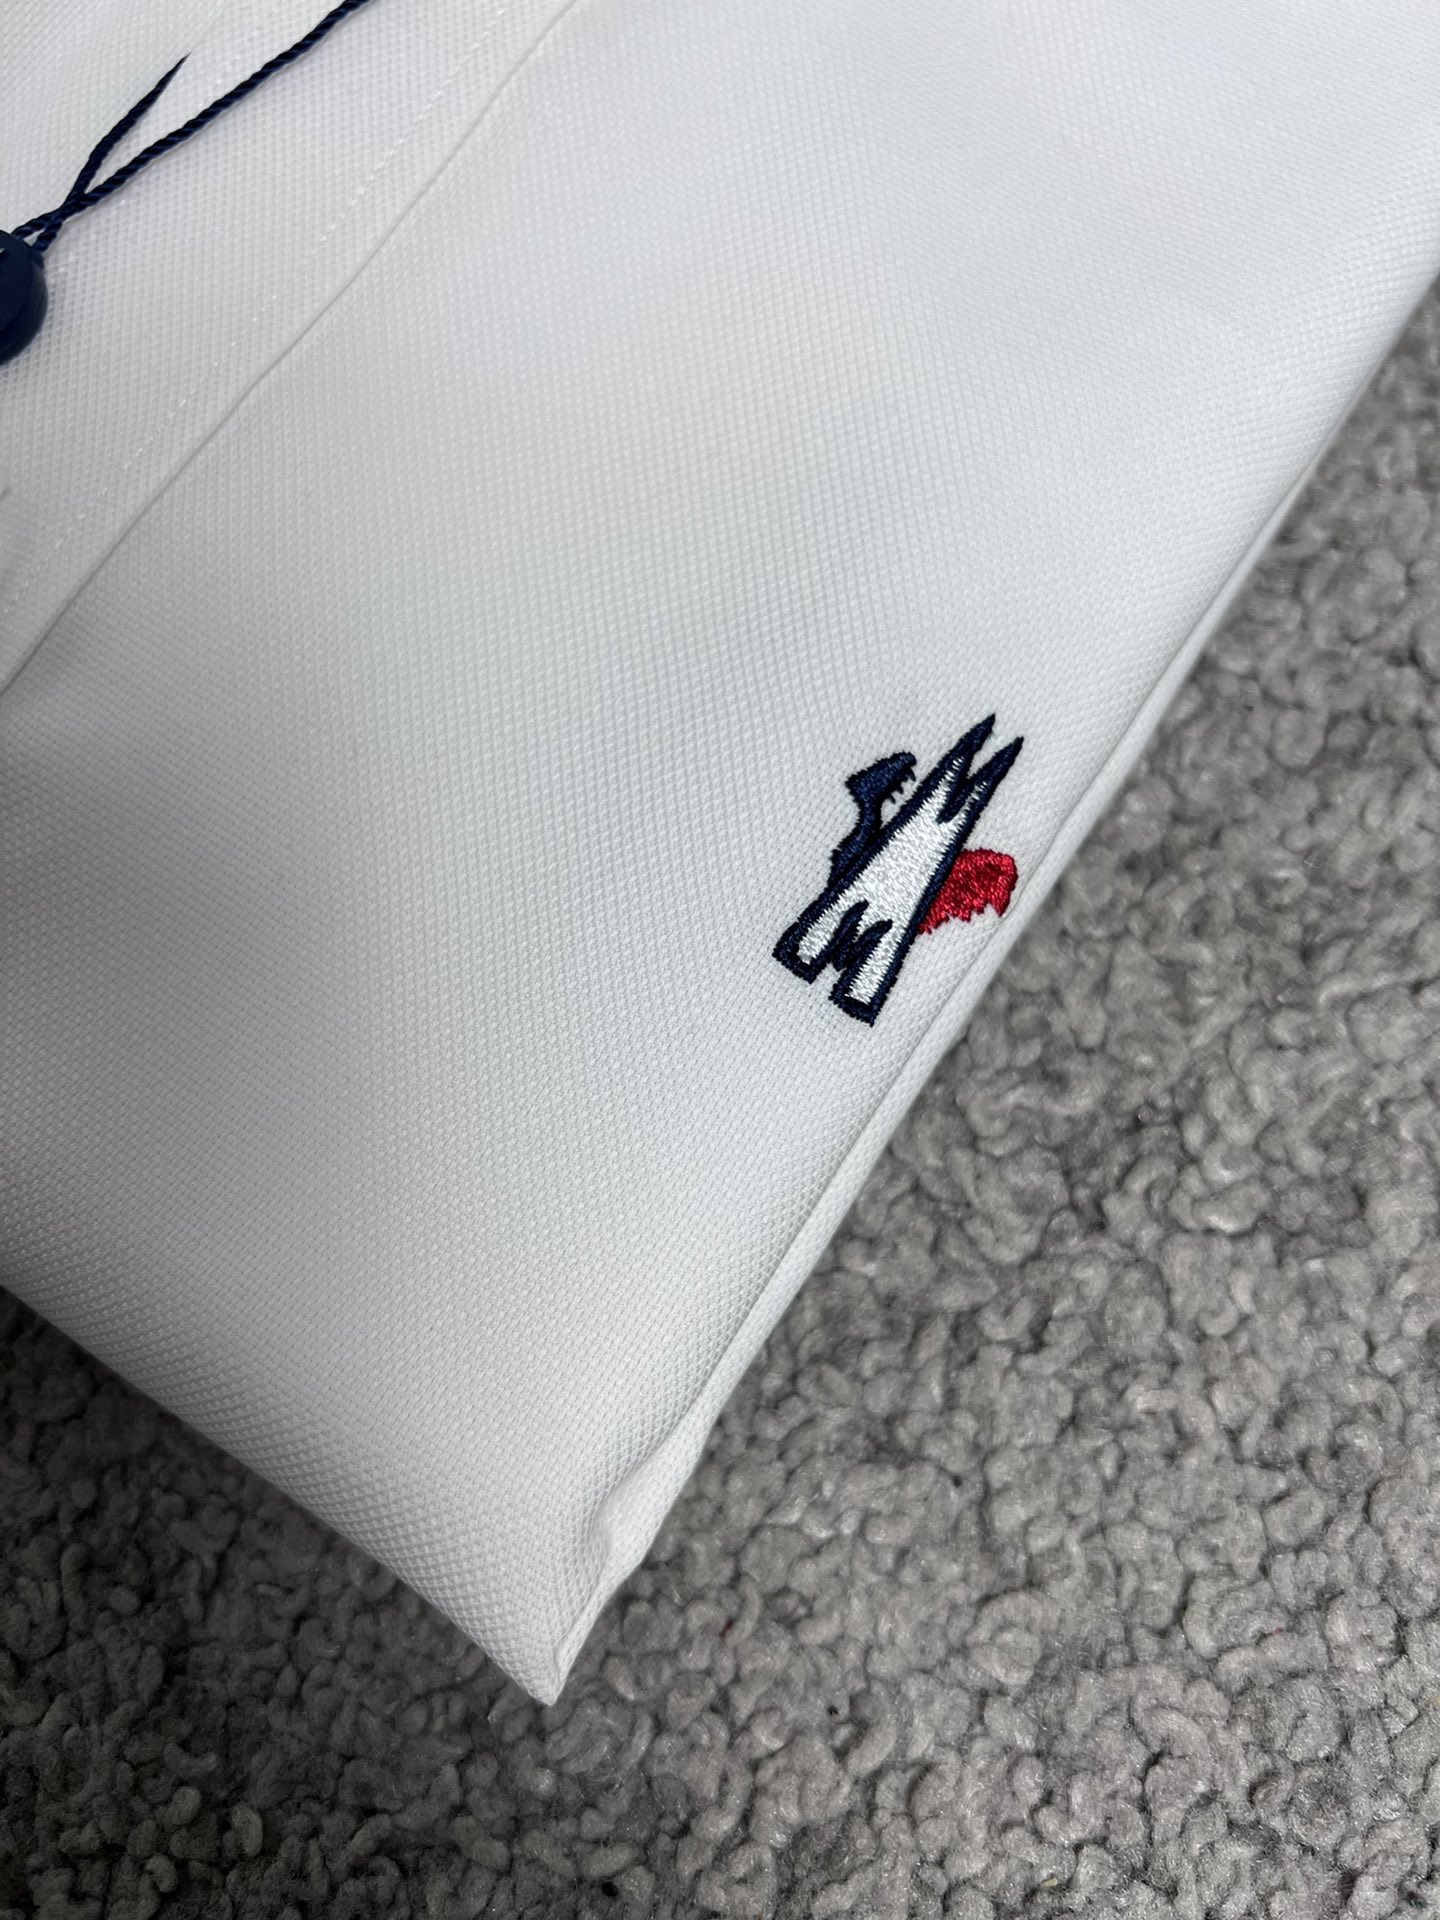 M蒙家24SS春夏新款衬衫高端系列码数SMLXLXXL